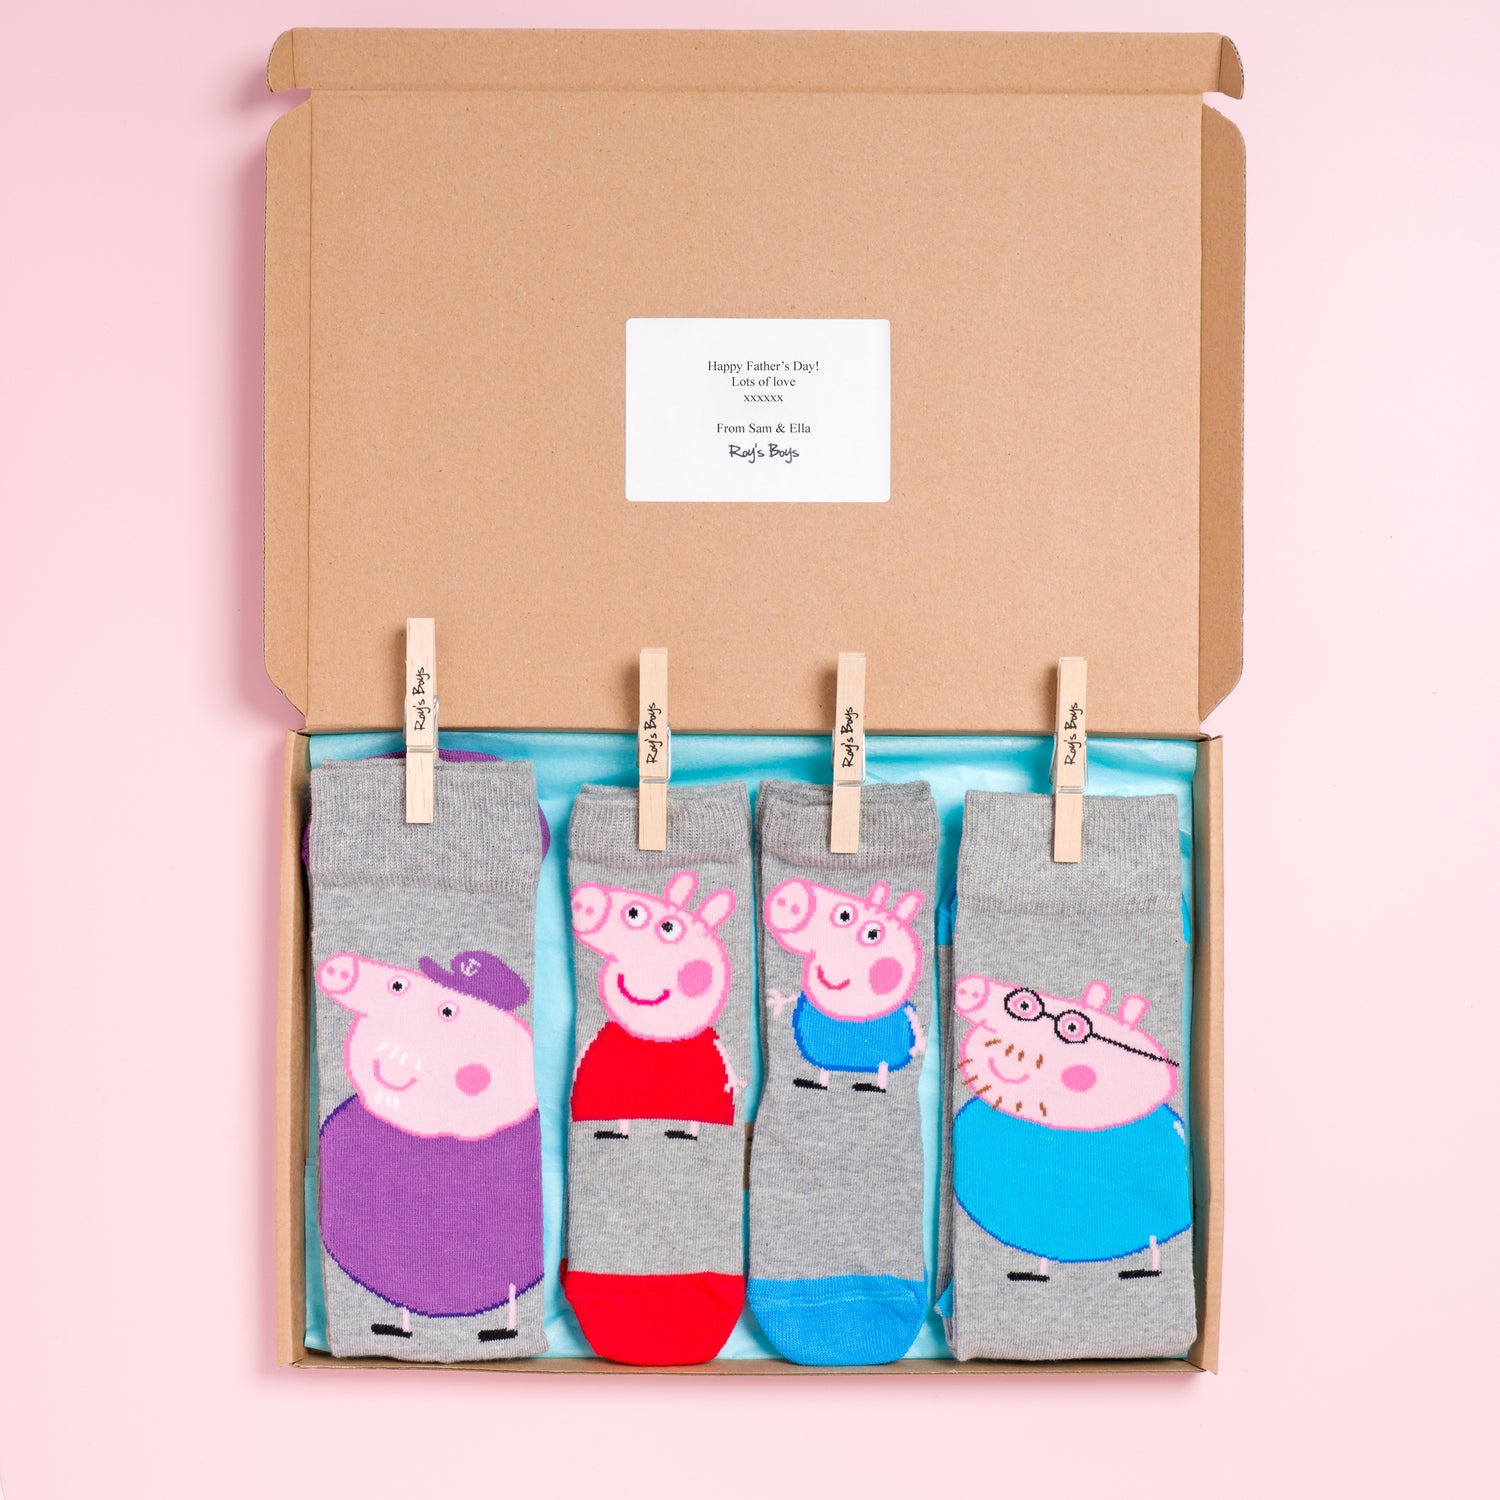 Peppa Pig Family Pack of Socks. Left to Right - Grandpa Pig Adult Socks, Peppa Pig Children&